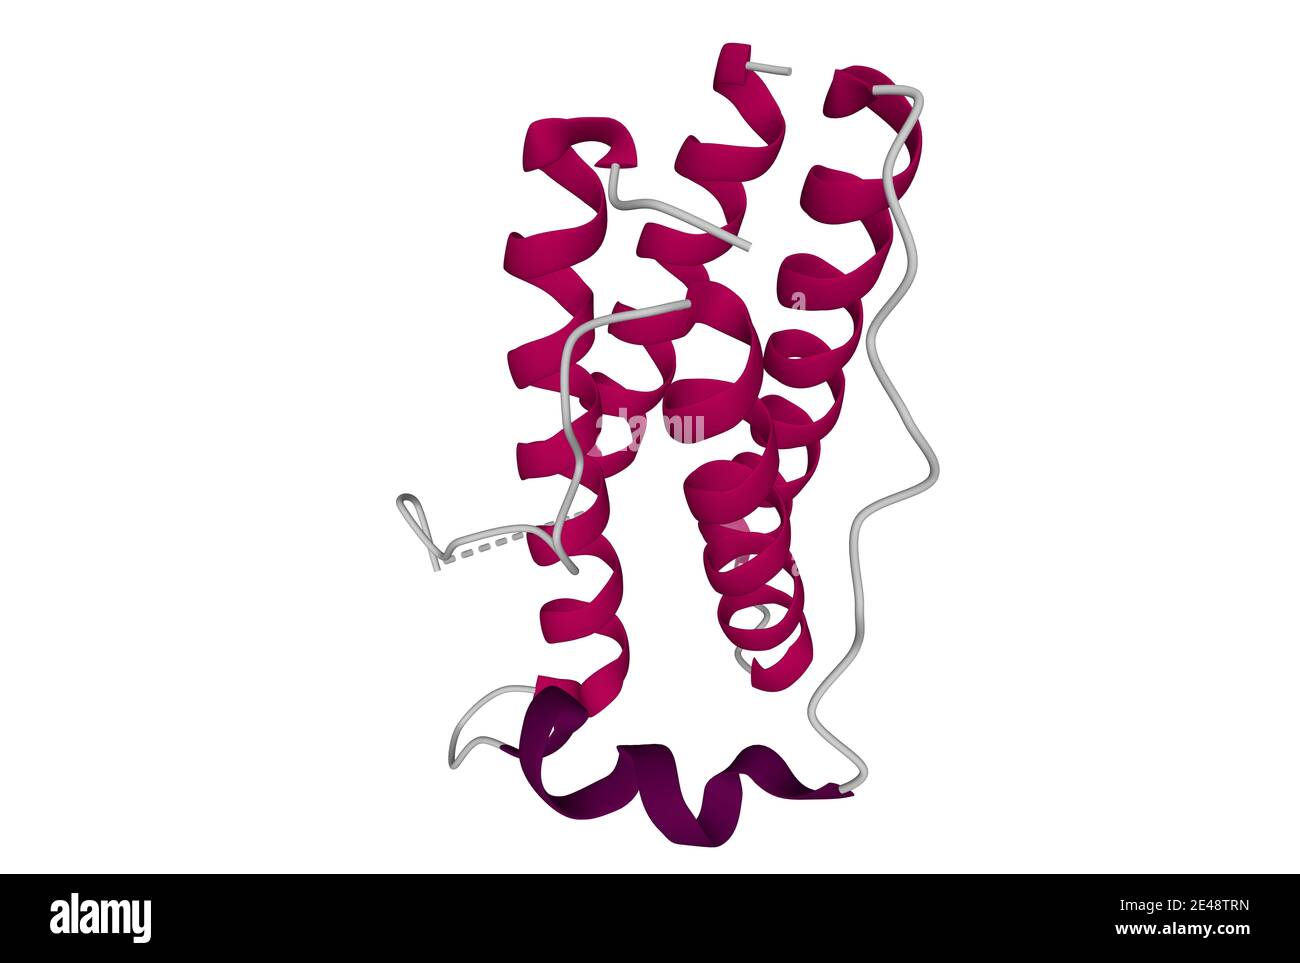 Estructura de la proteína de la obesidad humana, leptina. Modelo de dibujos animados en 3D aislado, fondo blanco Foto de stock